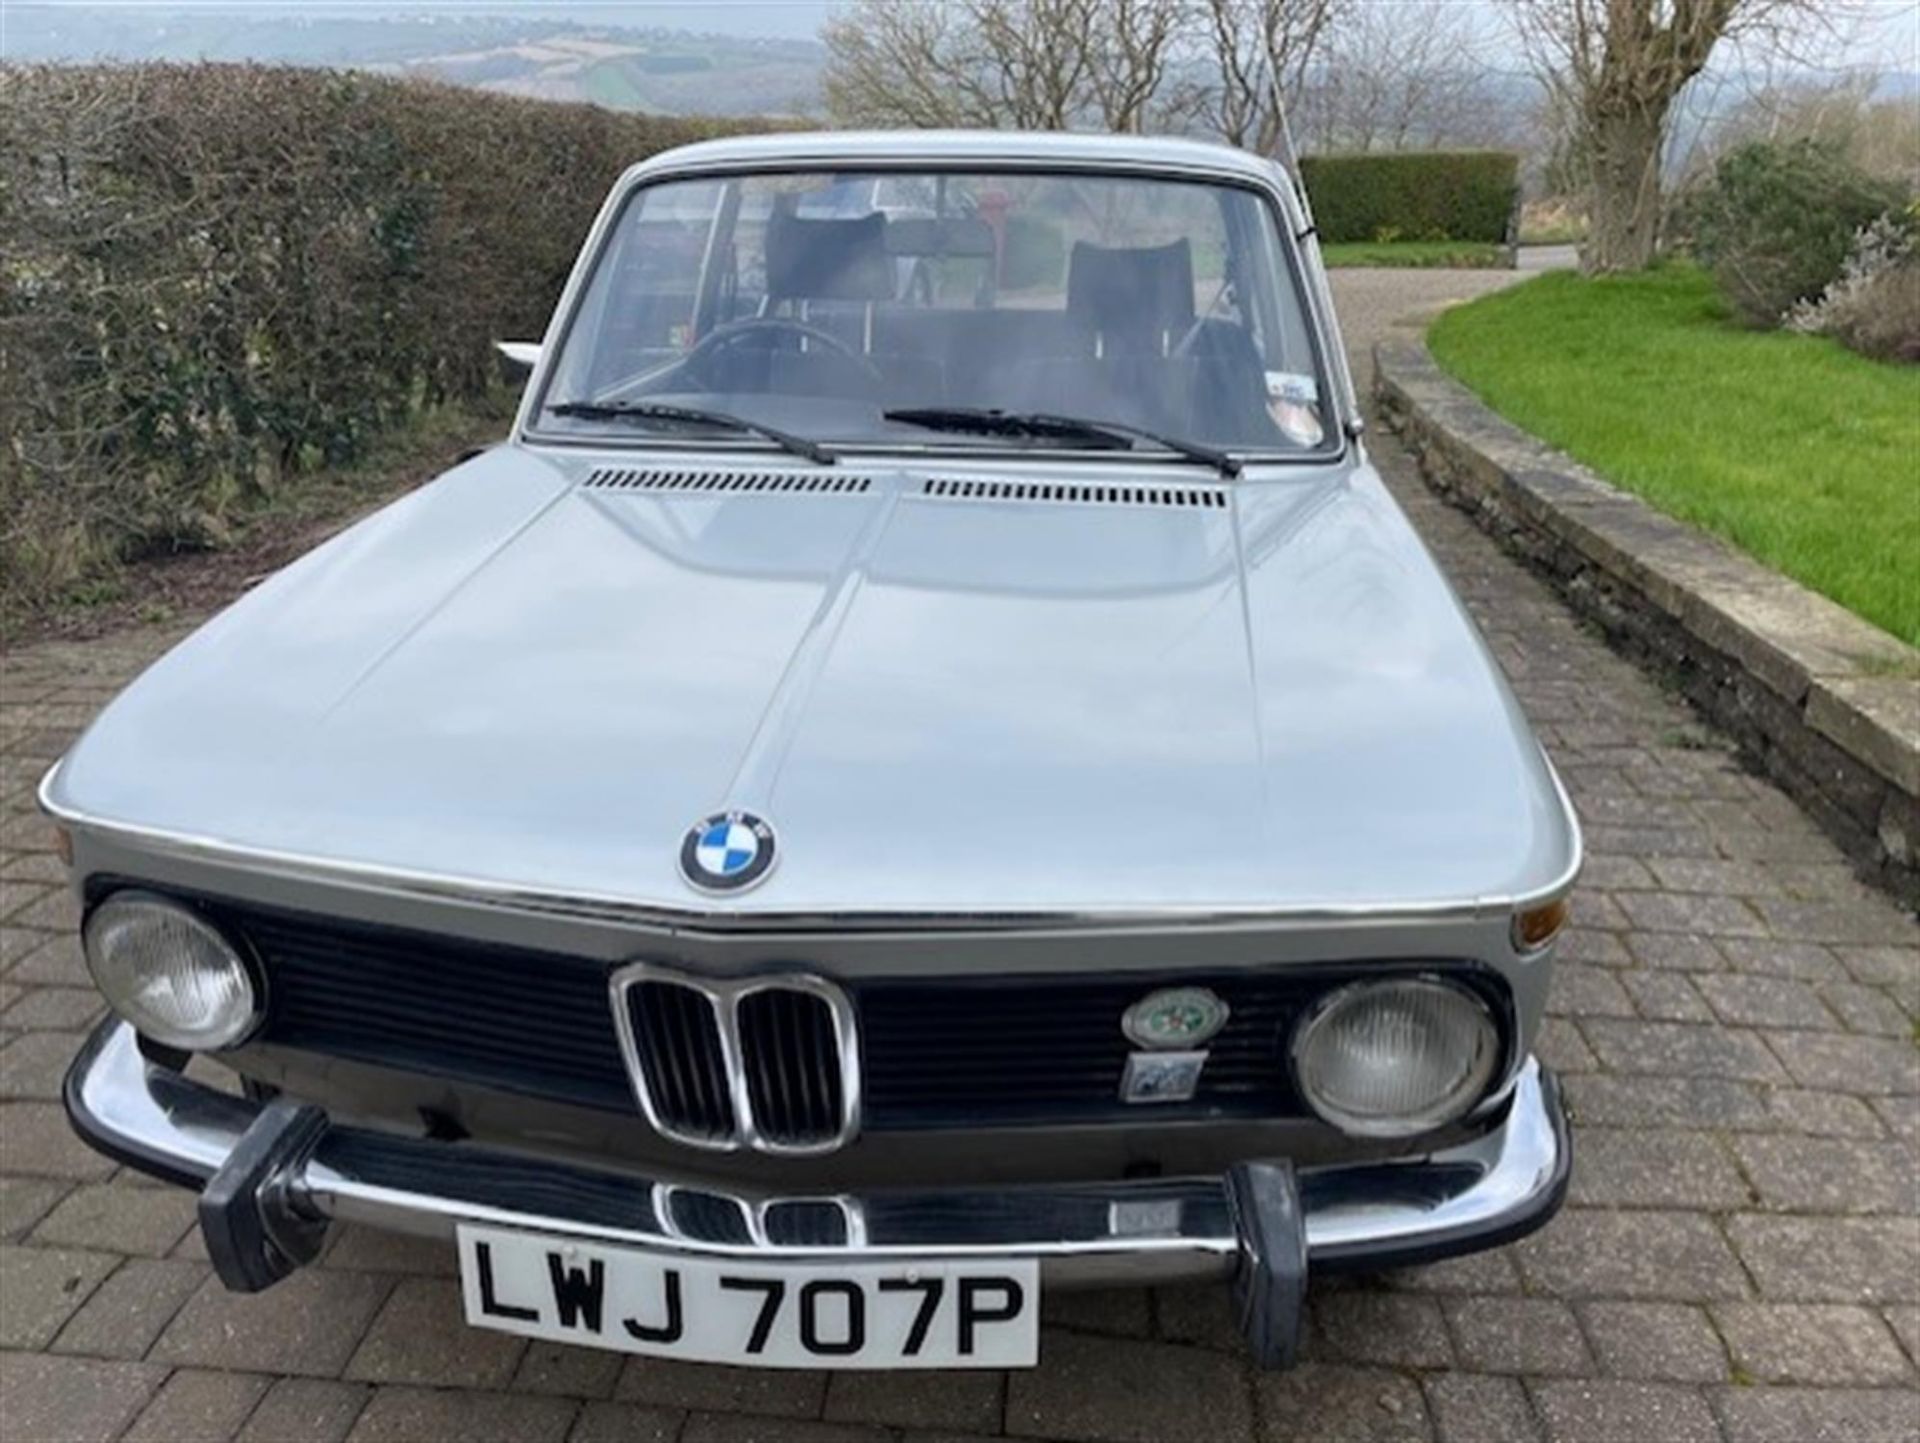 1976 BMW 2002 (E10/73) - Image 5 of 10